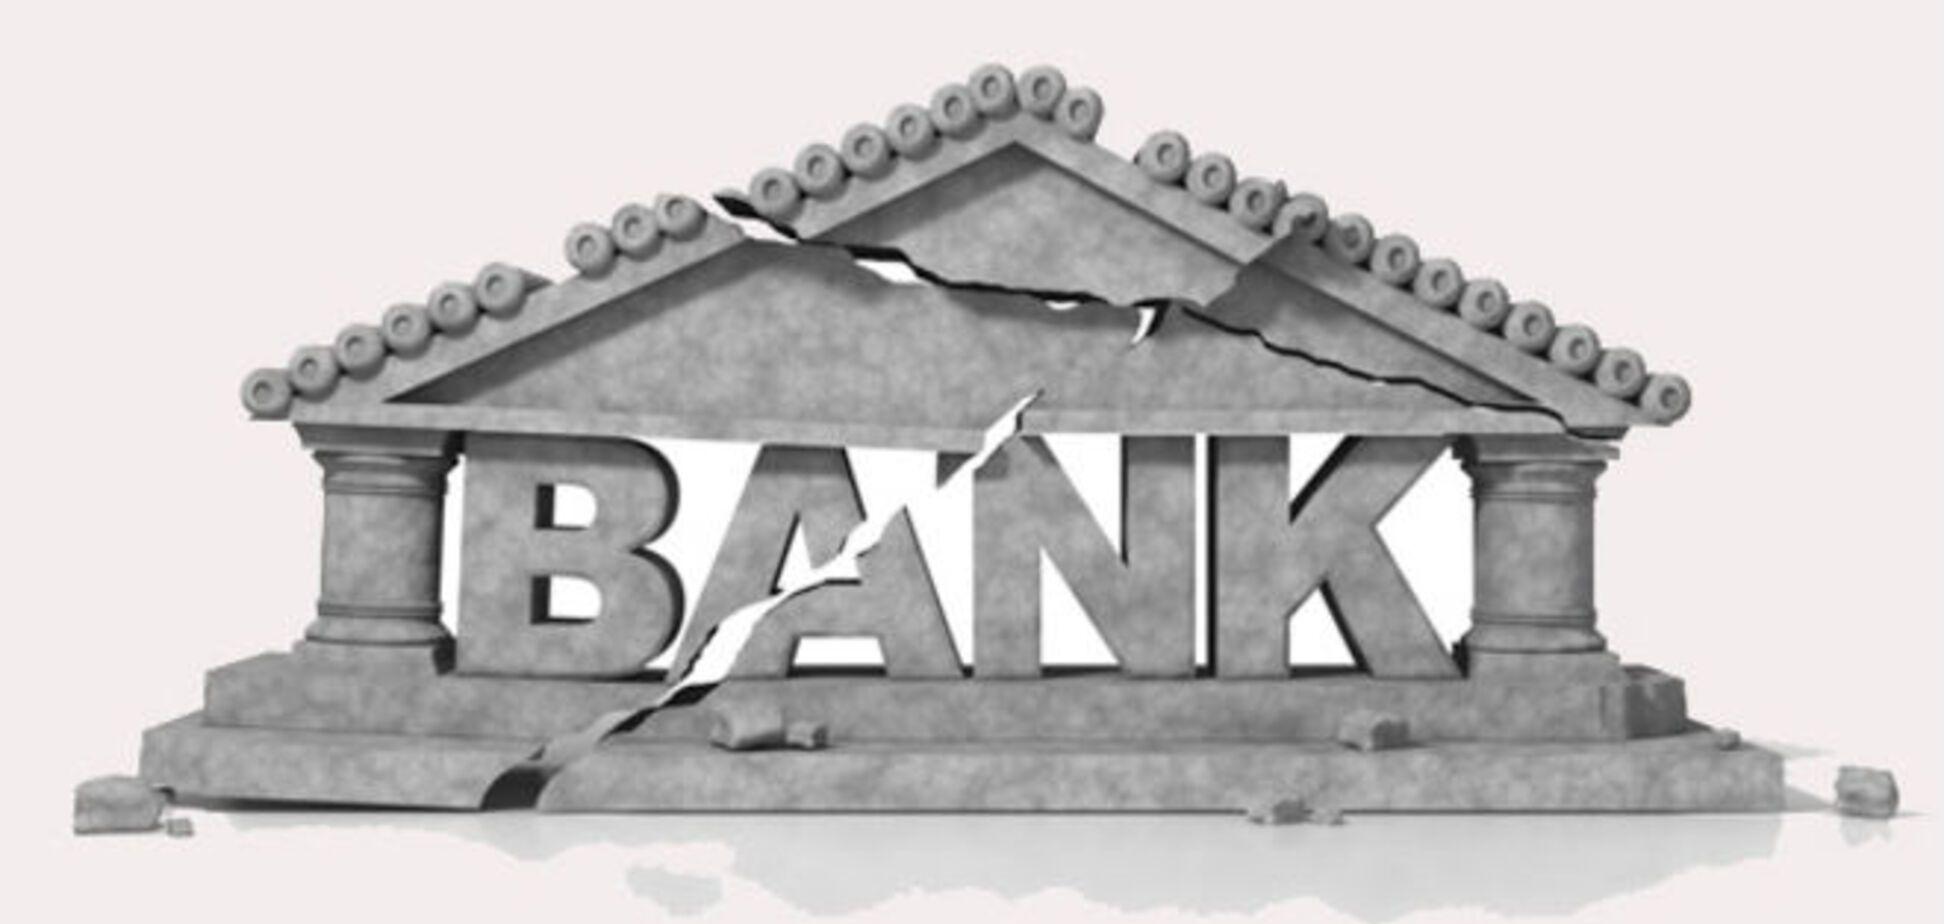 НБУ признал неплатежеспособными еще два банка